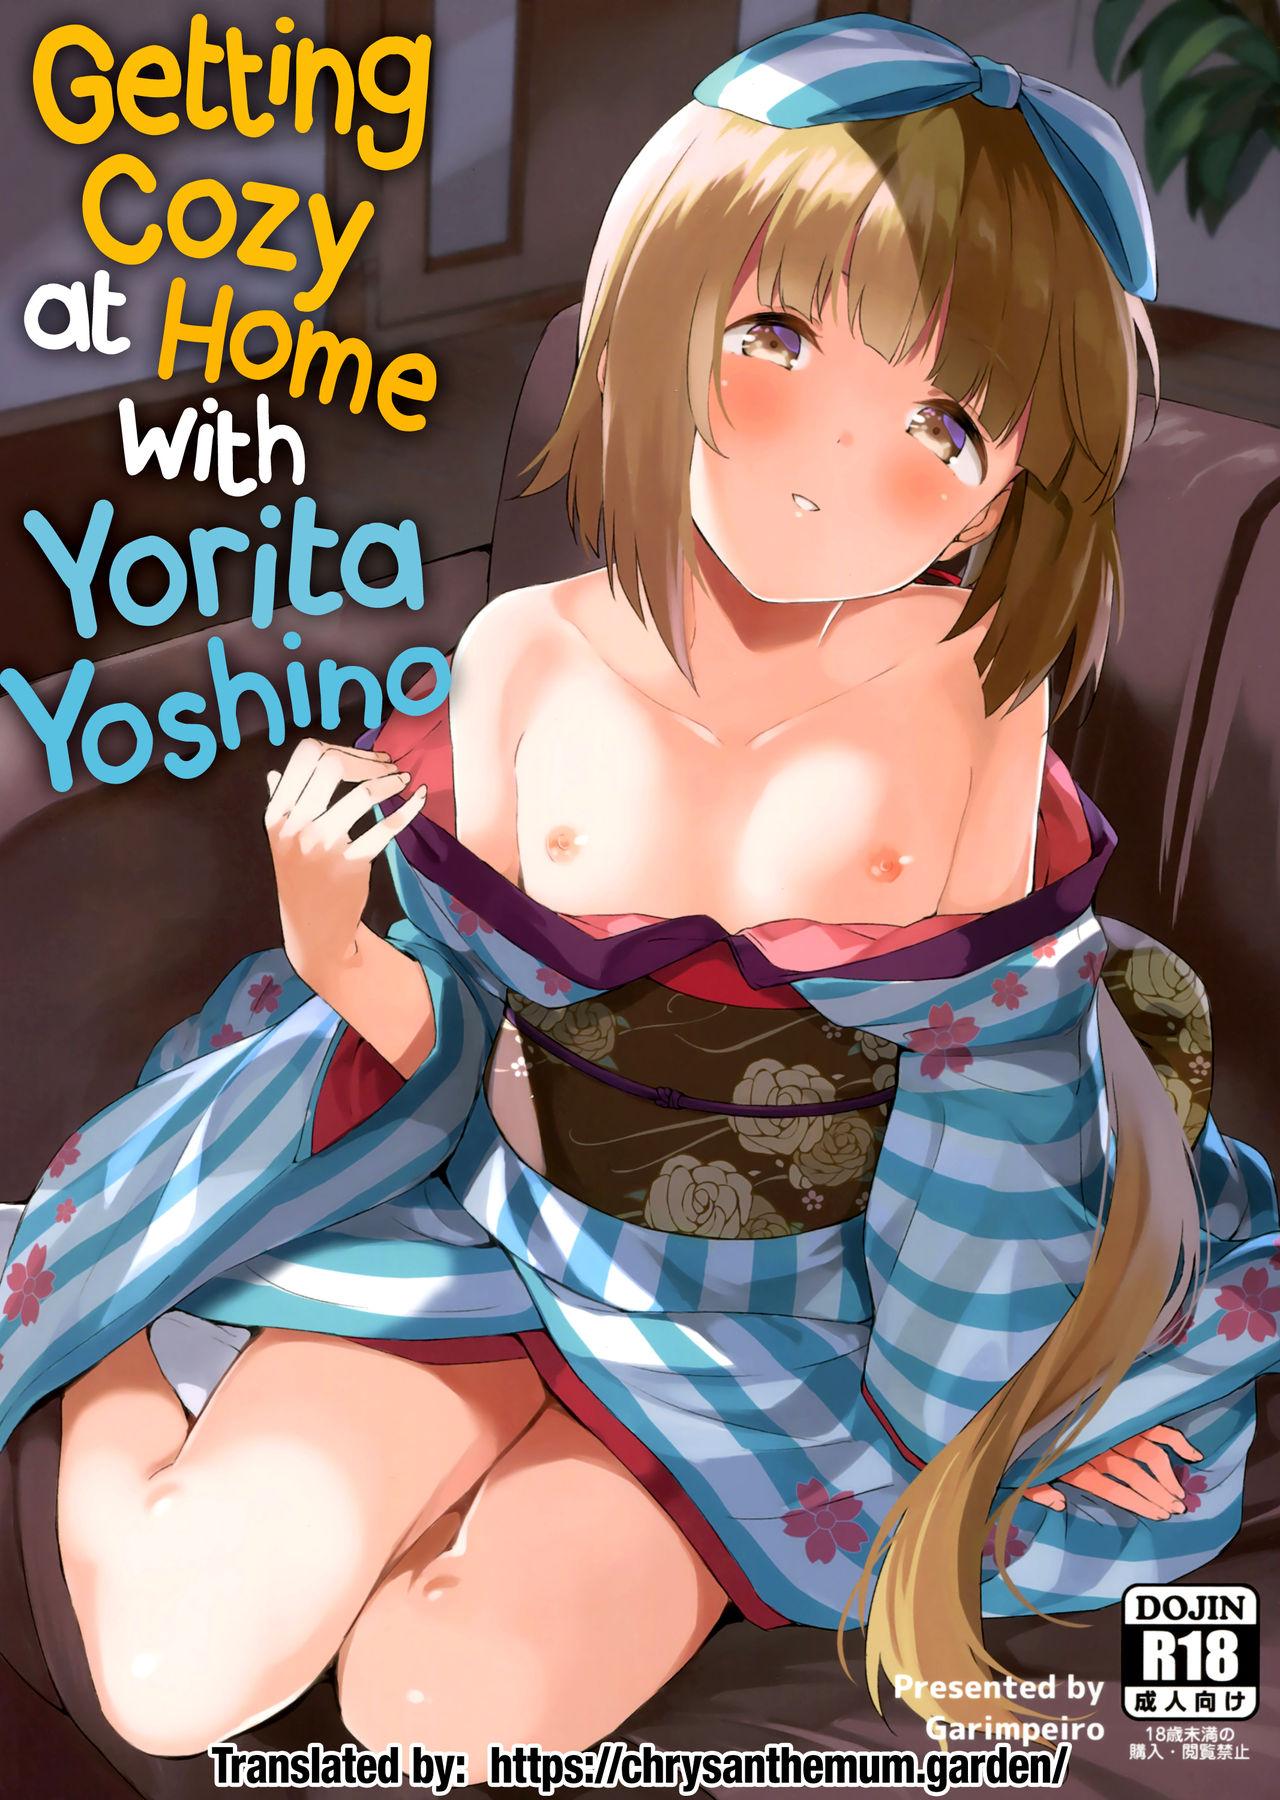 Yoshino hentai